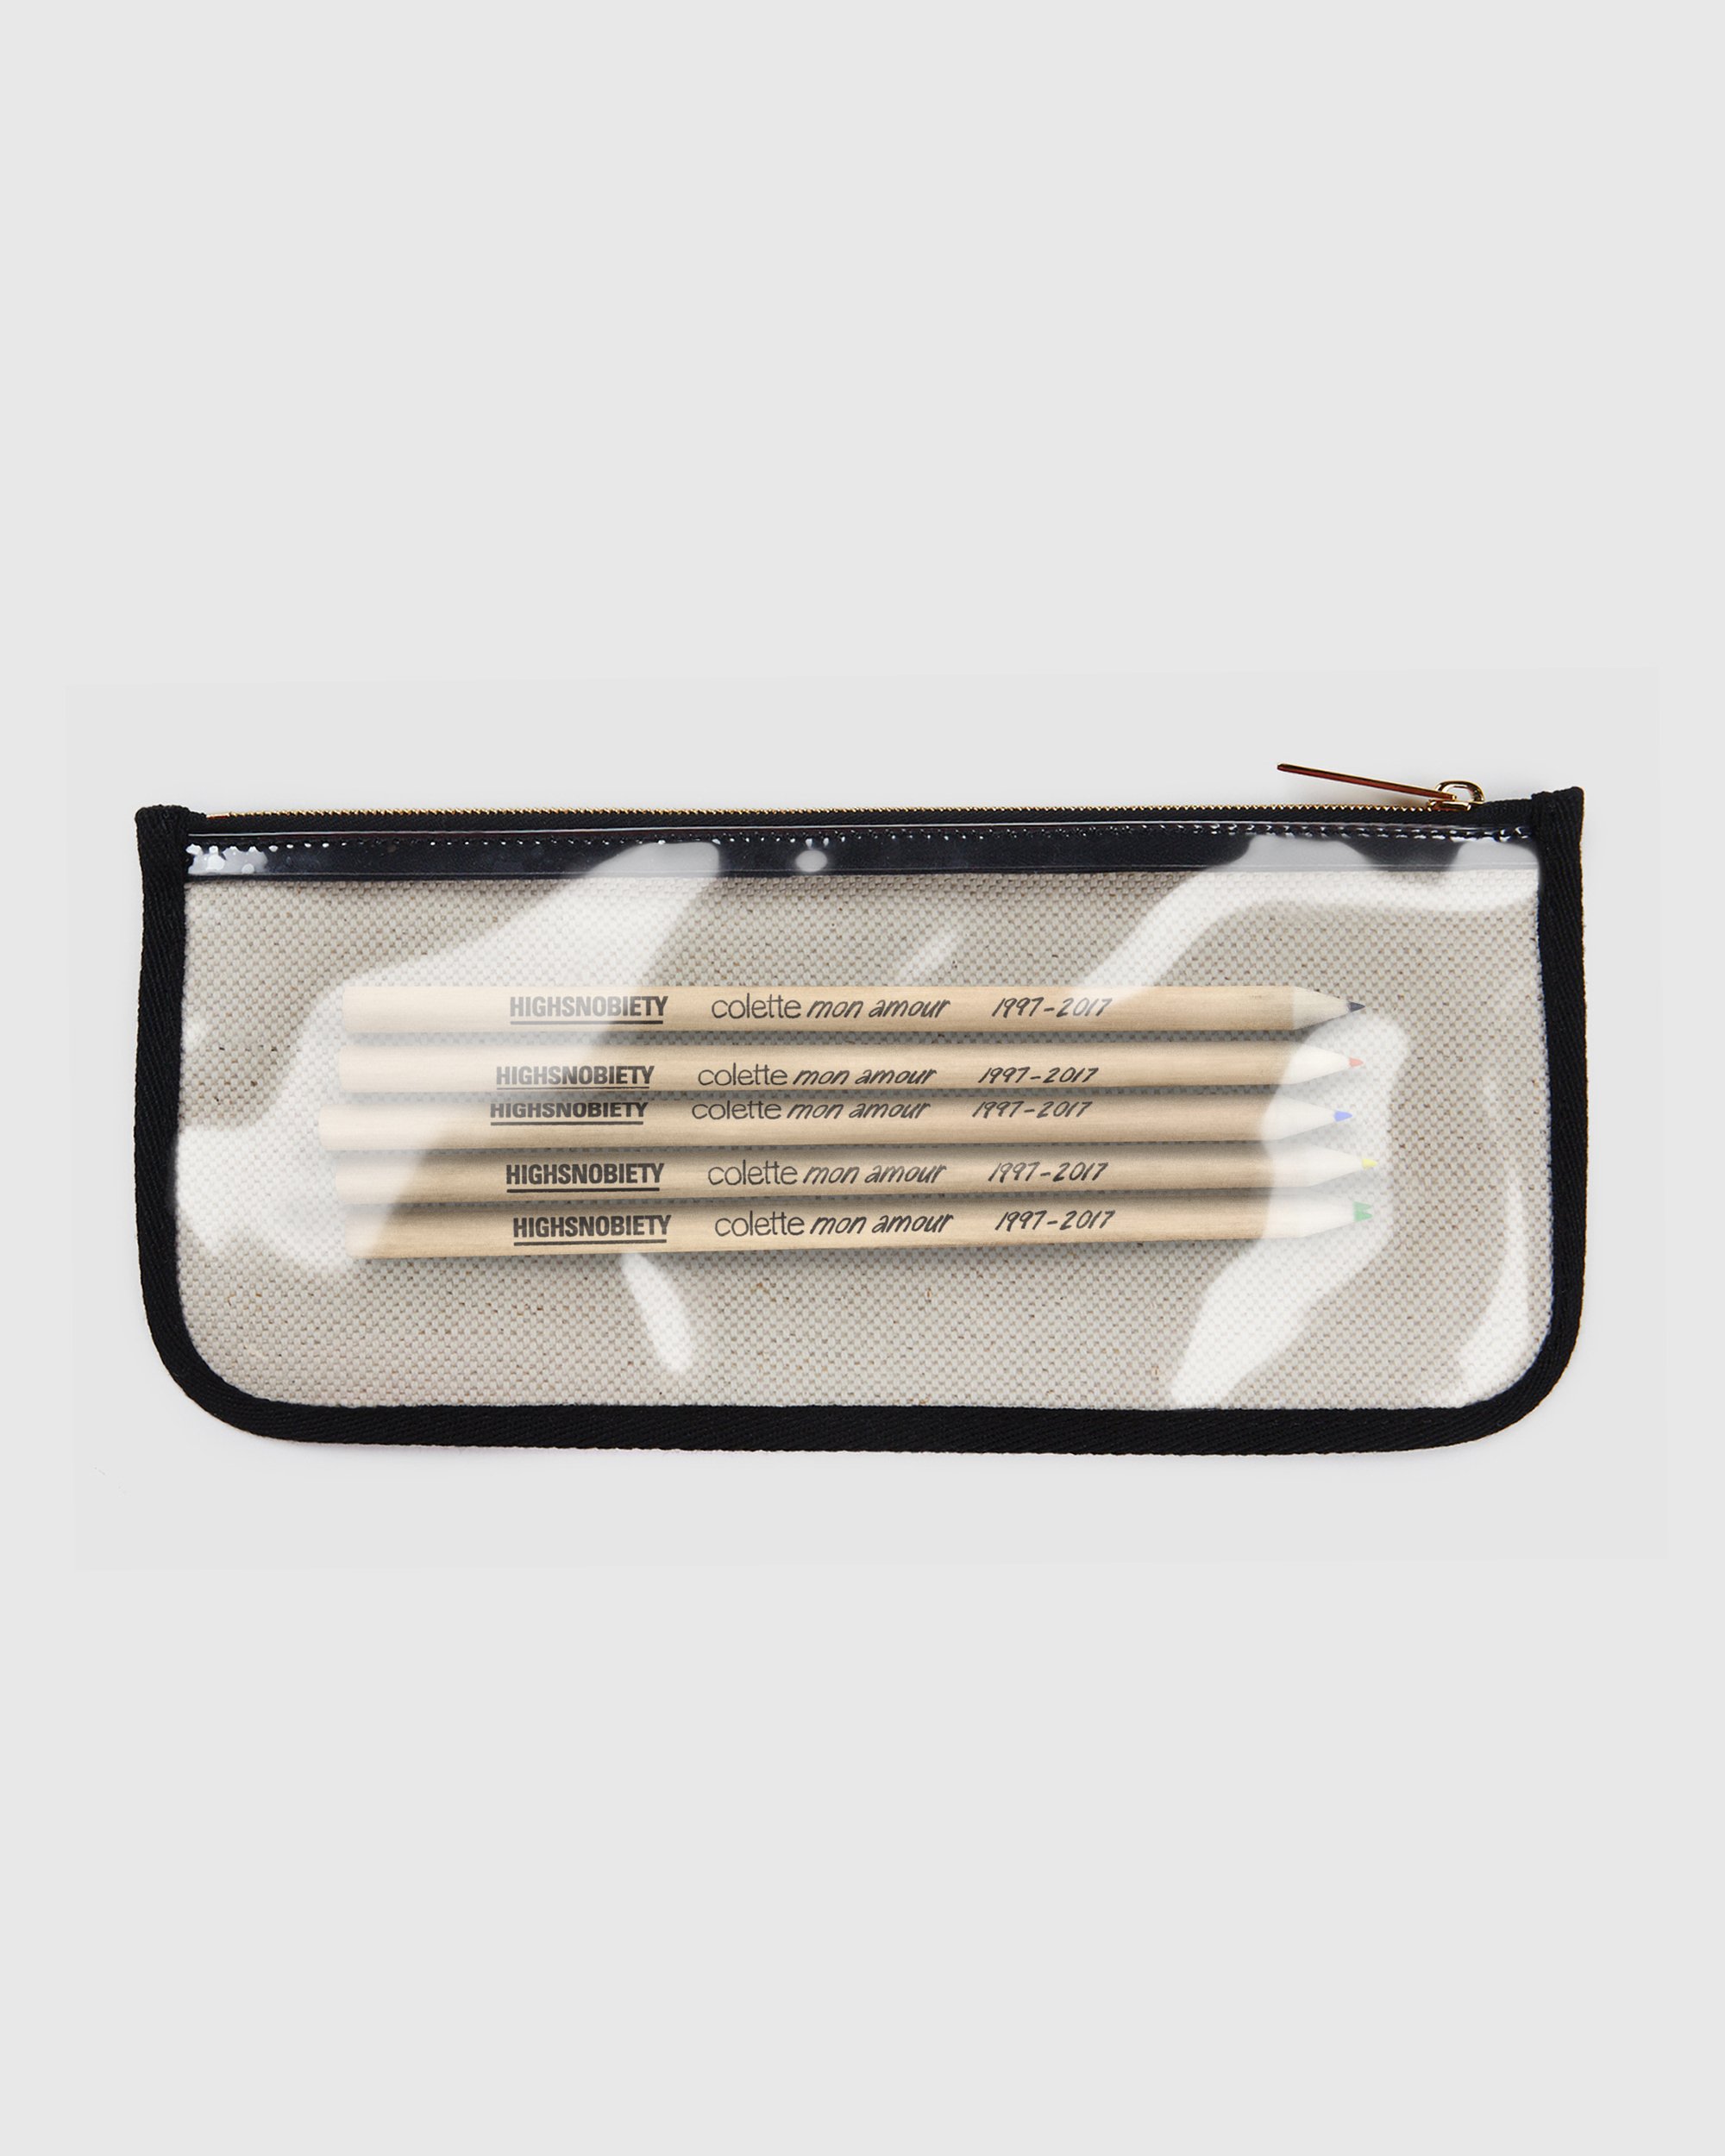 Colette Mon Amour - KAWS Beige Pencil Case - Desk Accessories - Beige - Image 5